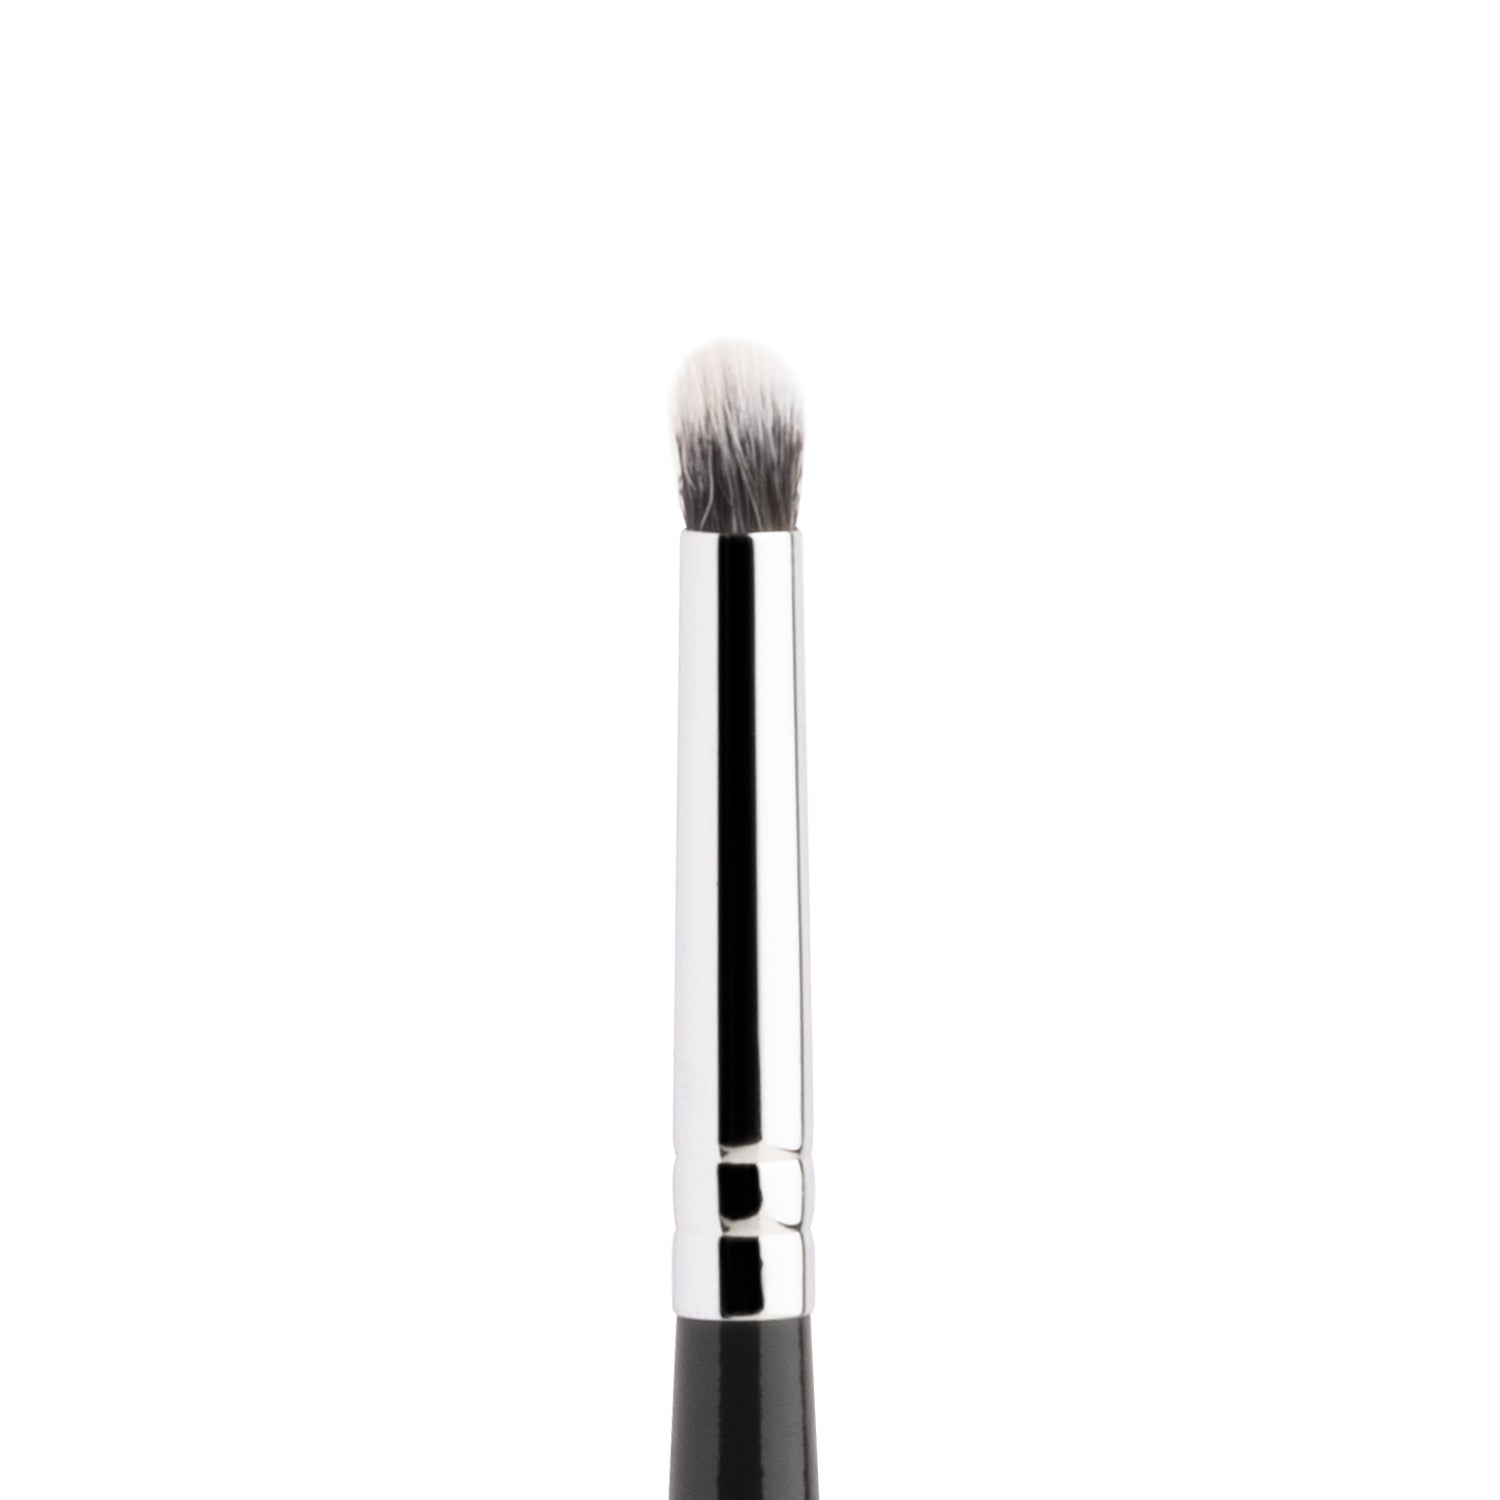 PAC Cosmetics Eyeshadow Blending Brush 202